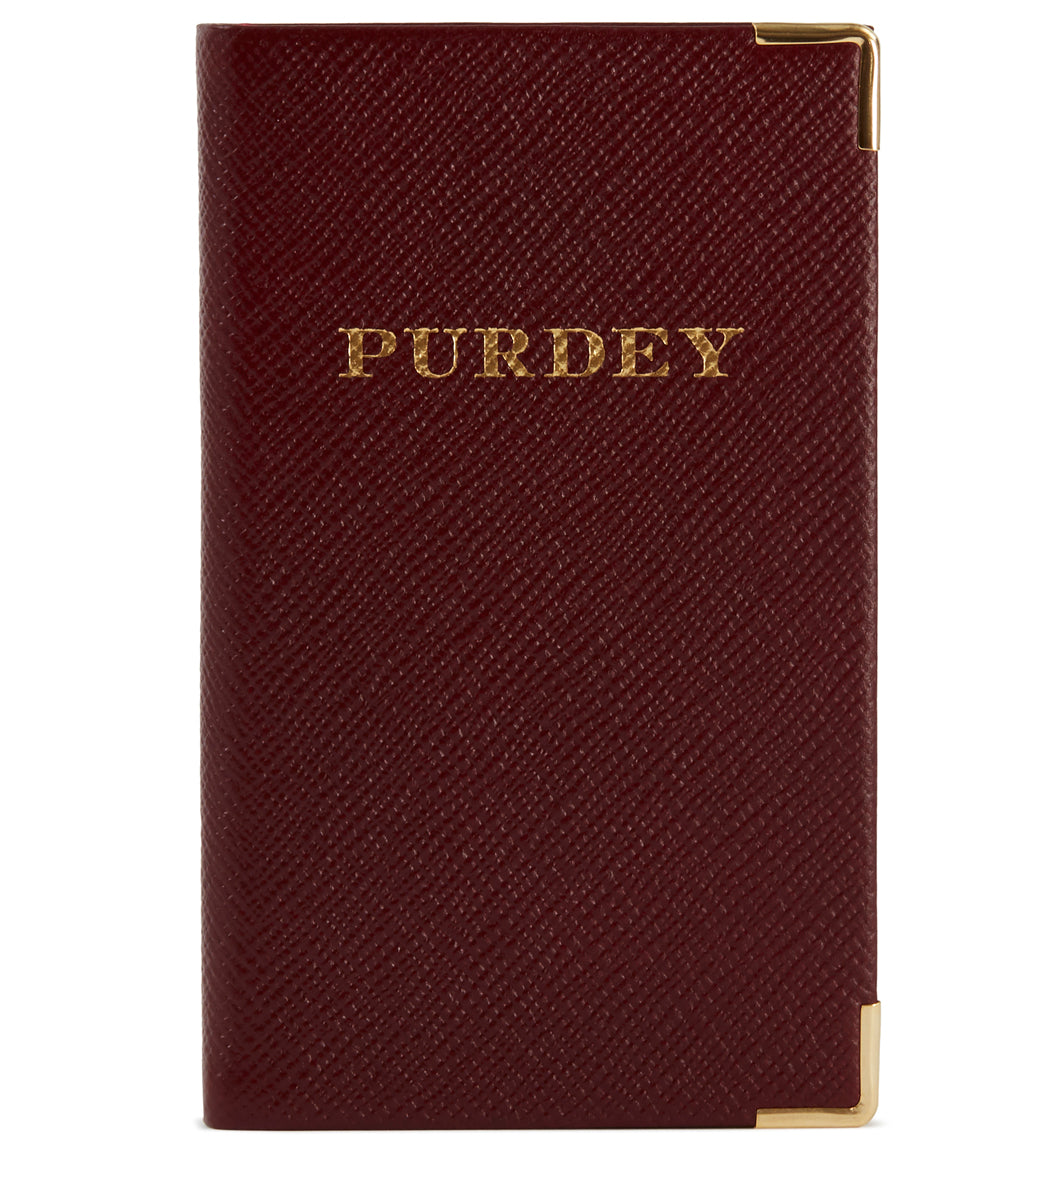 Purdey book